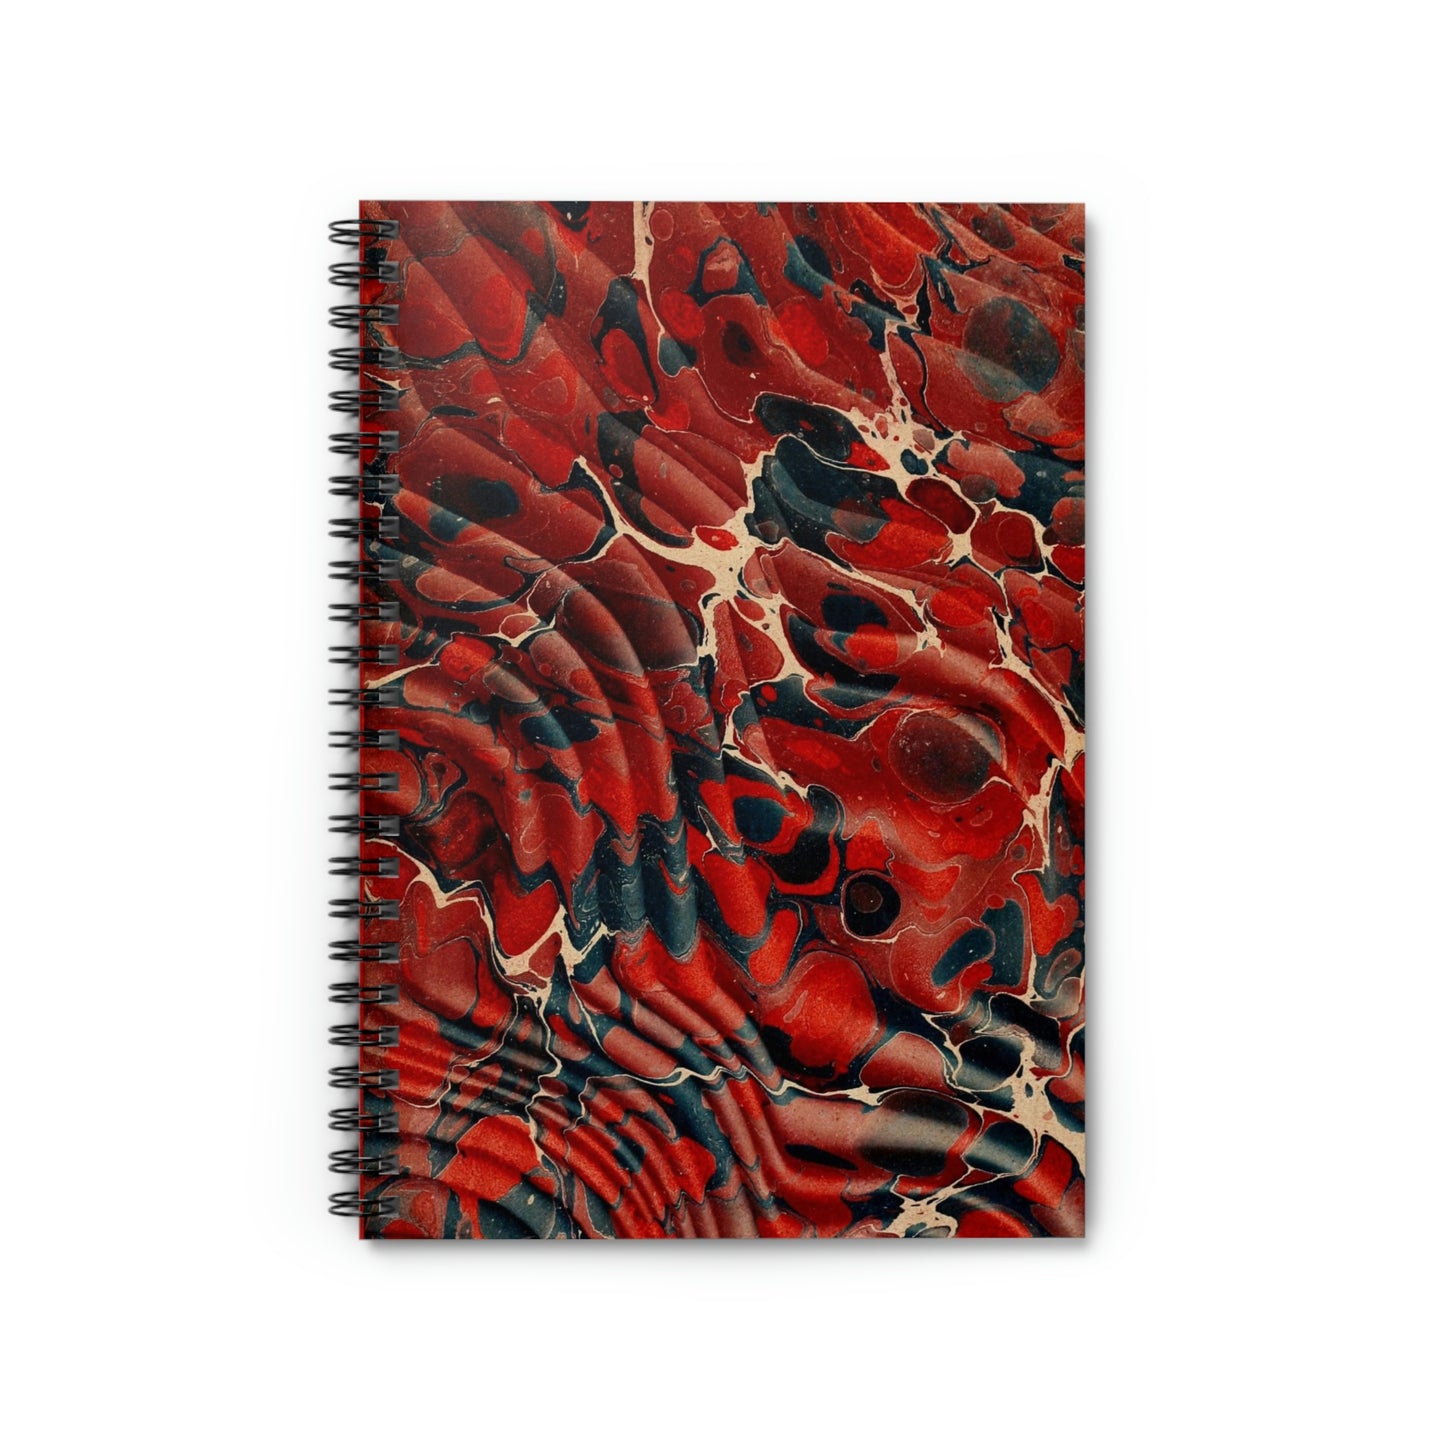 Spiral Notebook Dark Red Dark Blue Marbling - Ruled Line